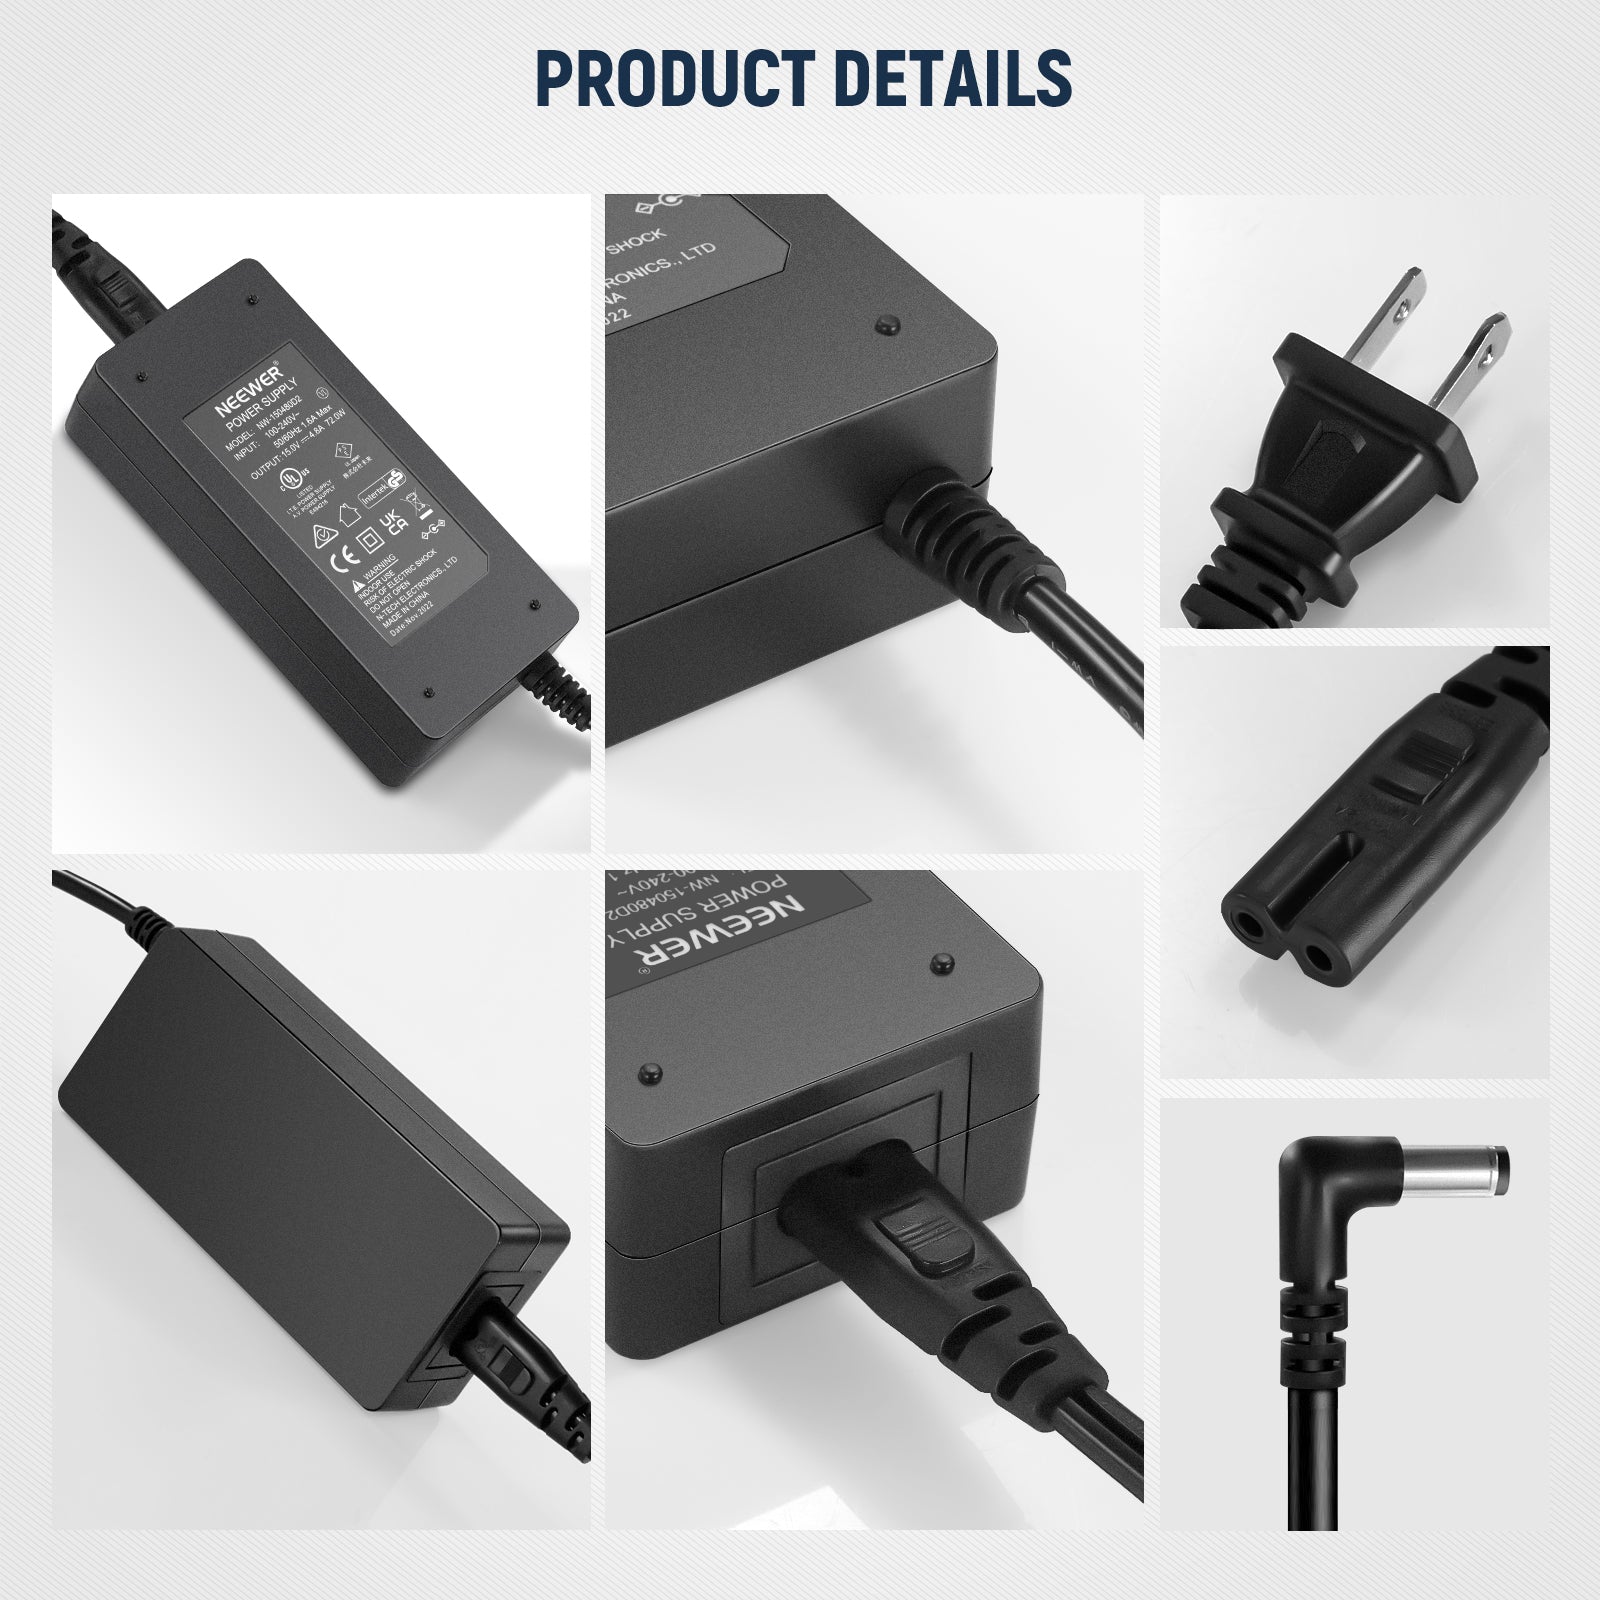 NEEWER Chargeur Adaptateur Secteur USB 10W 5V 2A pour lumière NEEWER